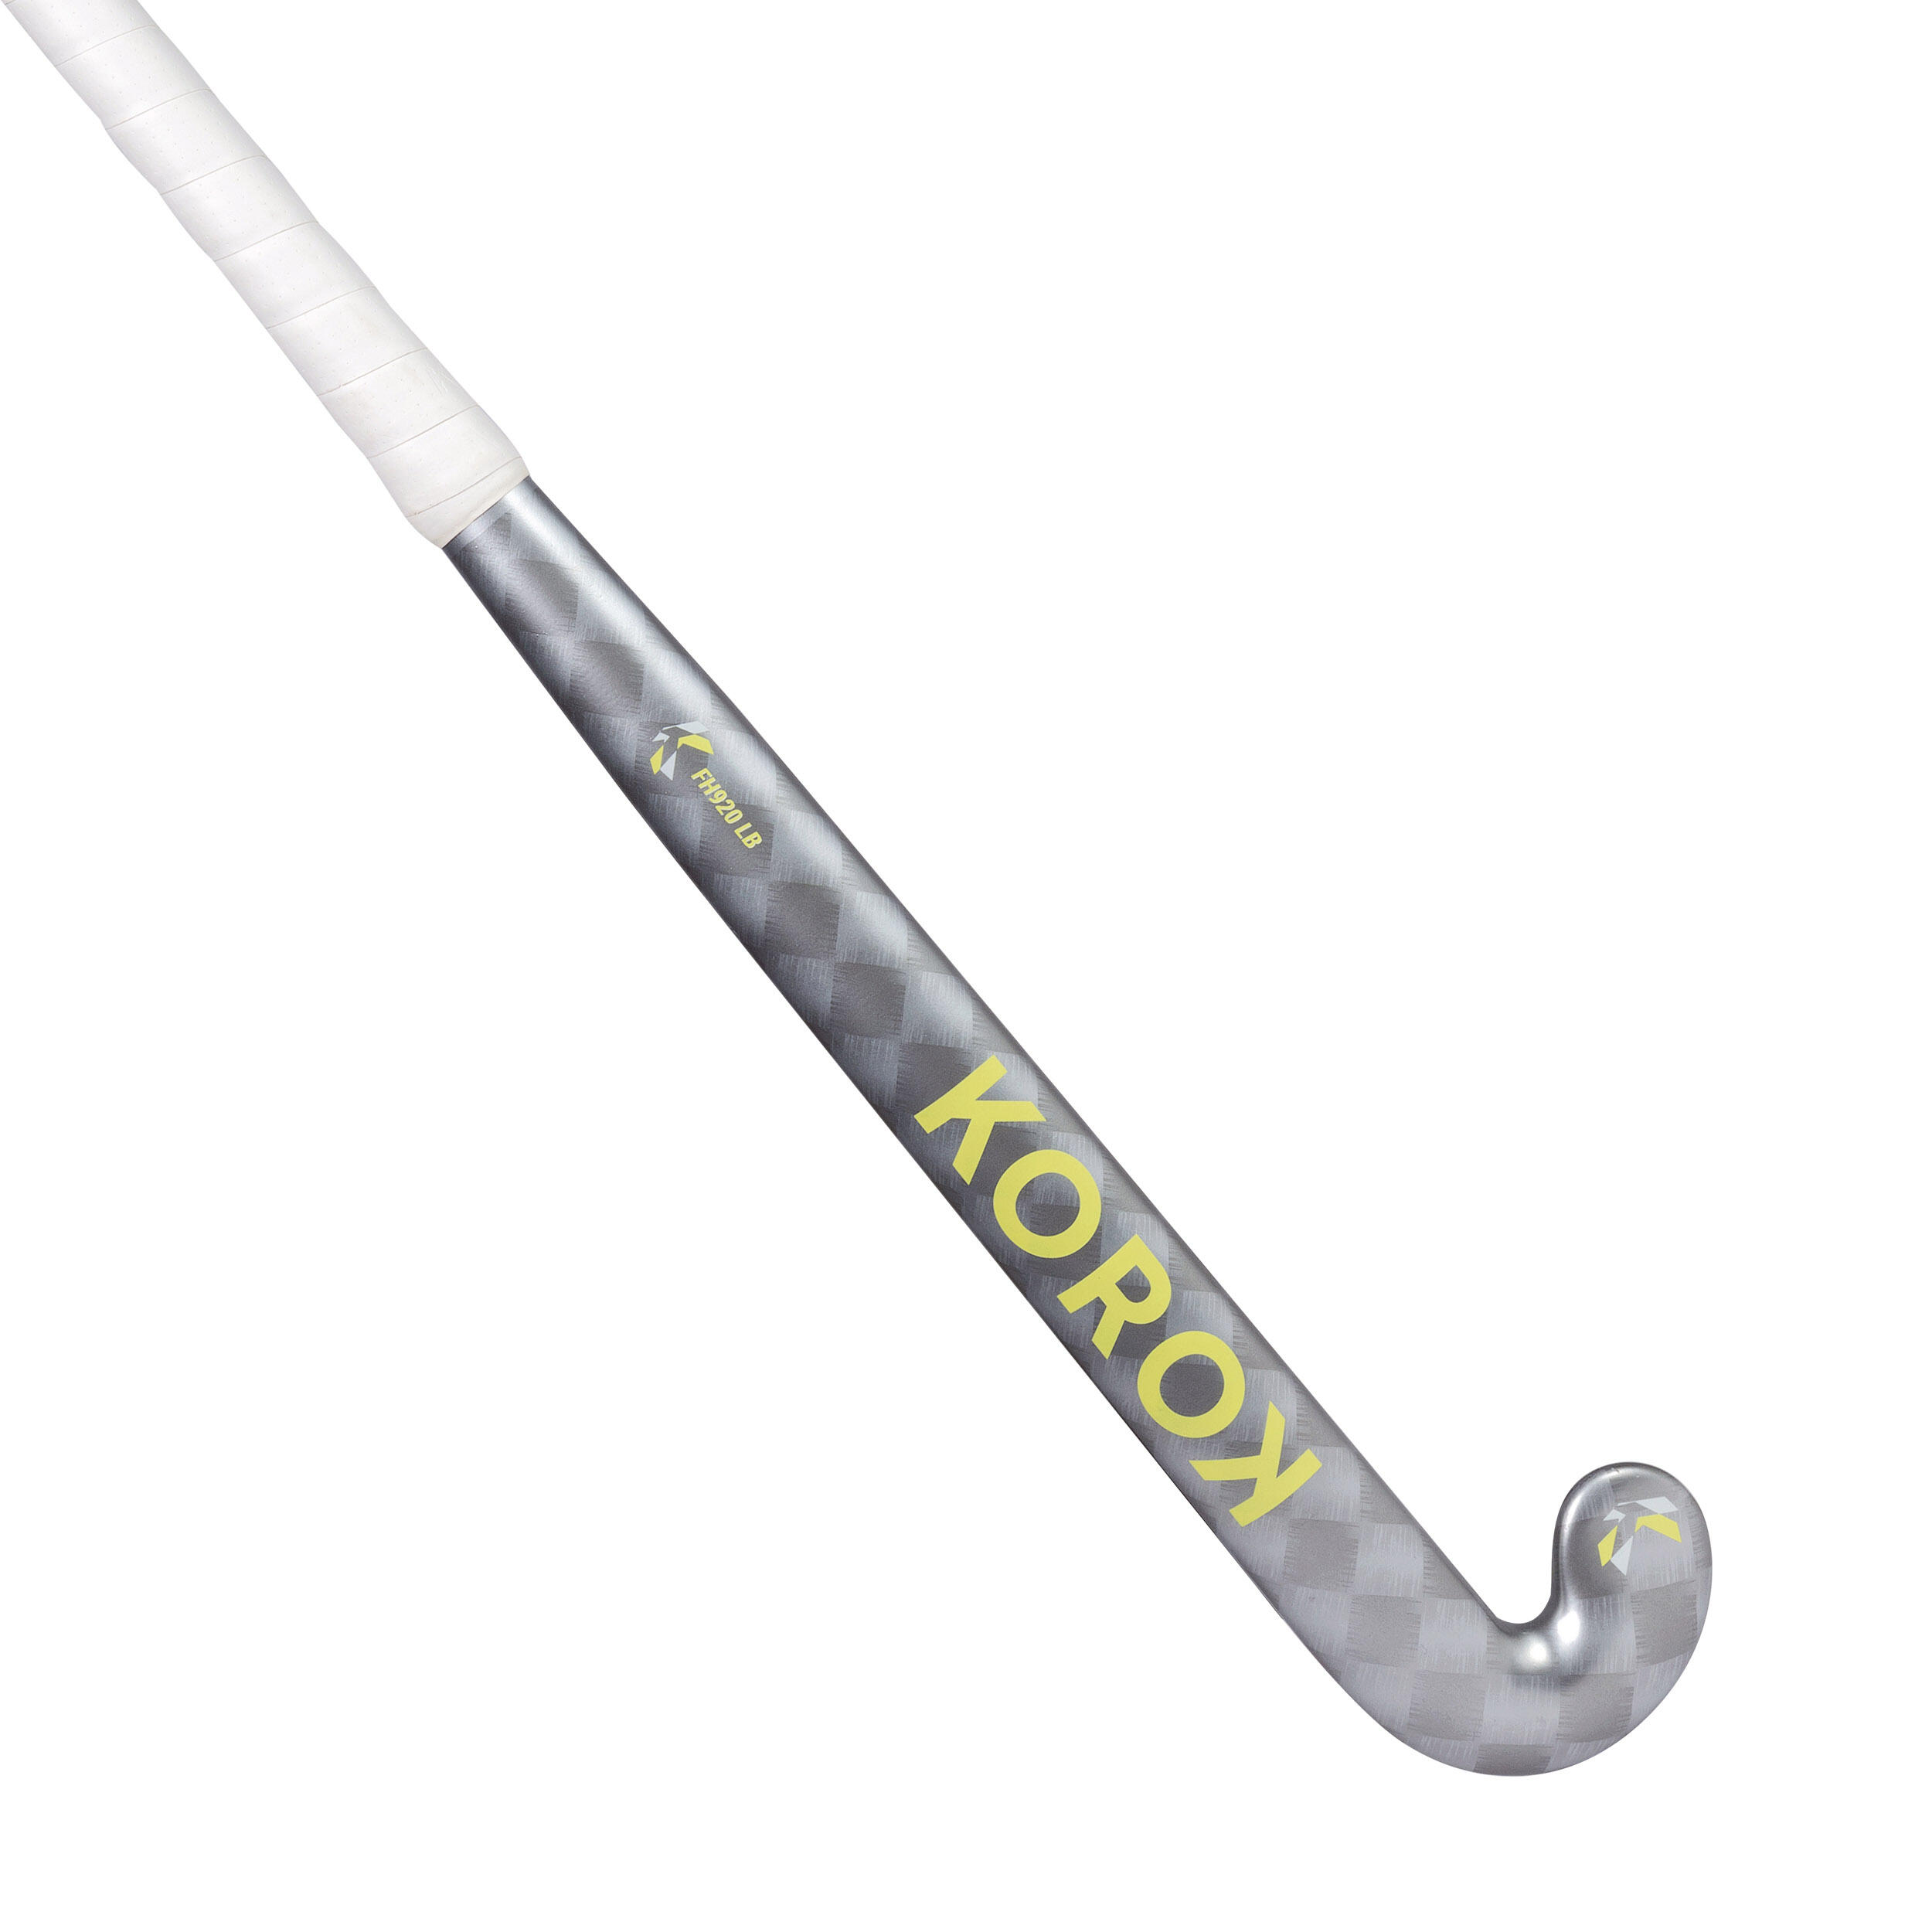 KOROK Kids' 20% Carbon Low Bow Field Hockey Stick FH920 - Grey/Yellow